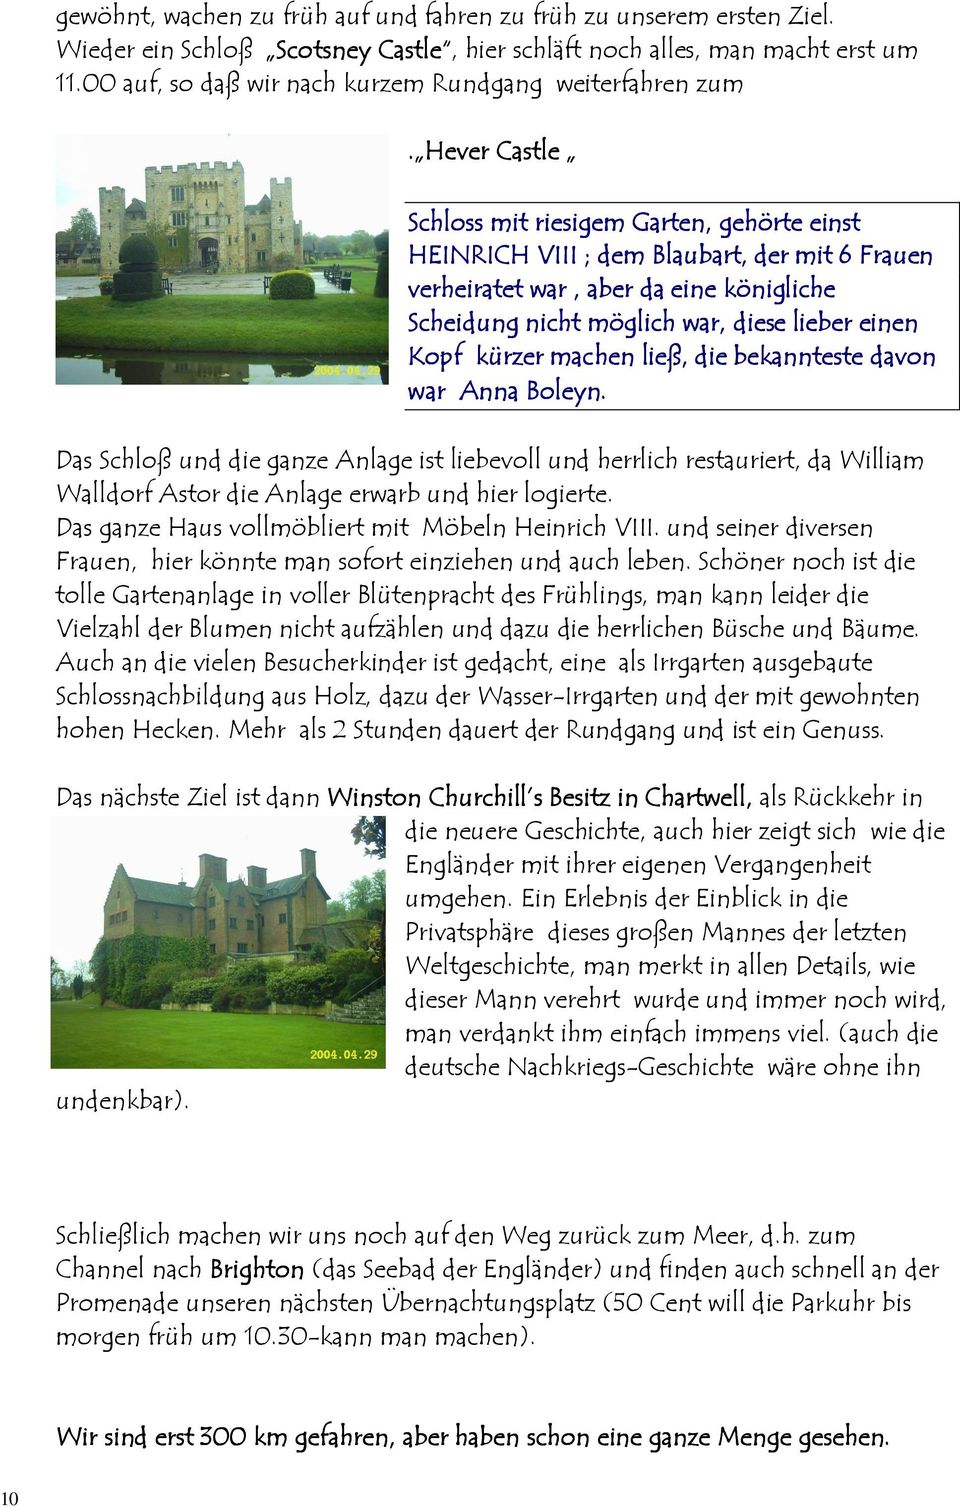 Hever Castle Schloss mit riesigem Garten, gehörte einst HEINRICH VIII ; dem Blaubart, der mit 6 Frauen verheiratet war, aber da eine königliche Scheidung nicht möglich war, diese lieber r einen Kopf